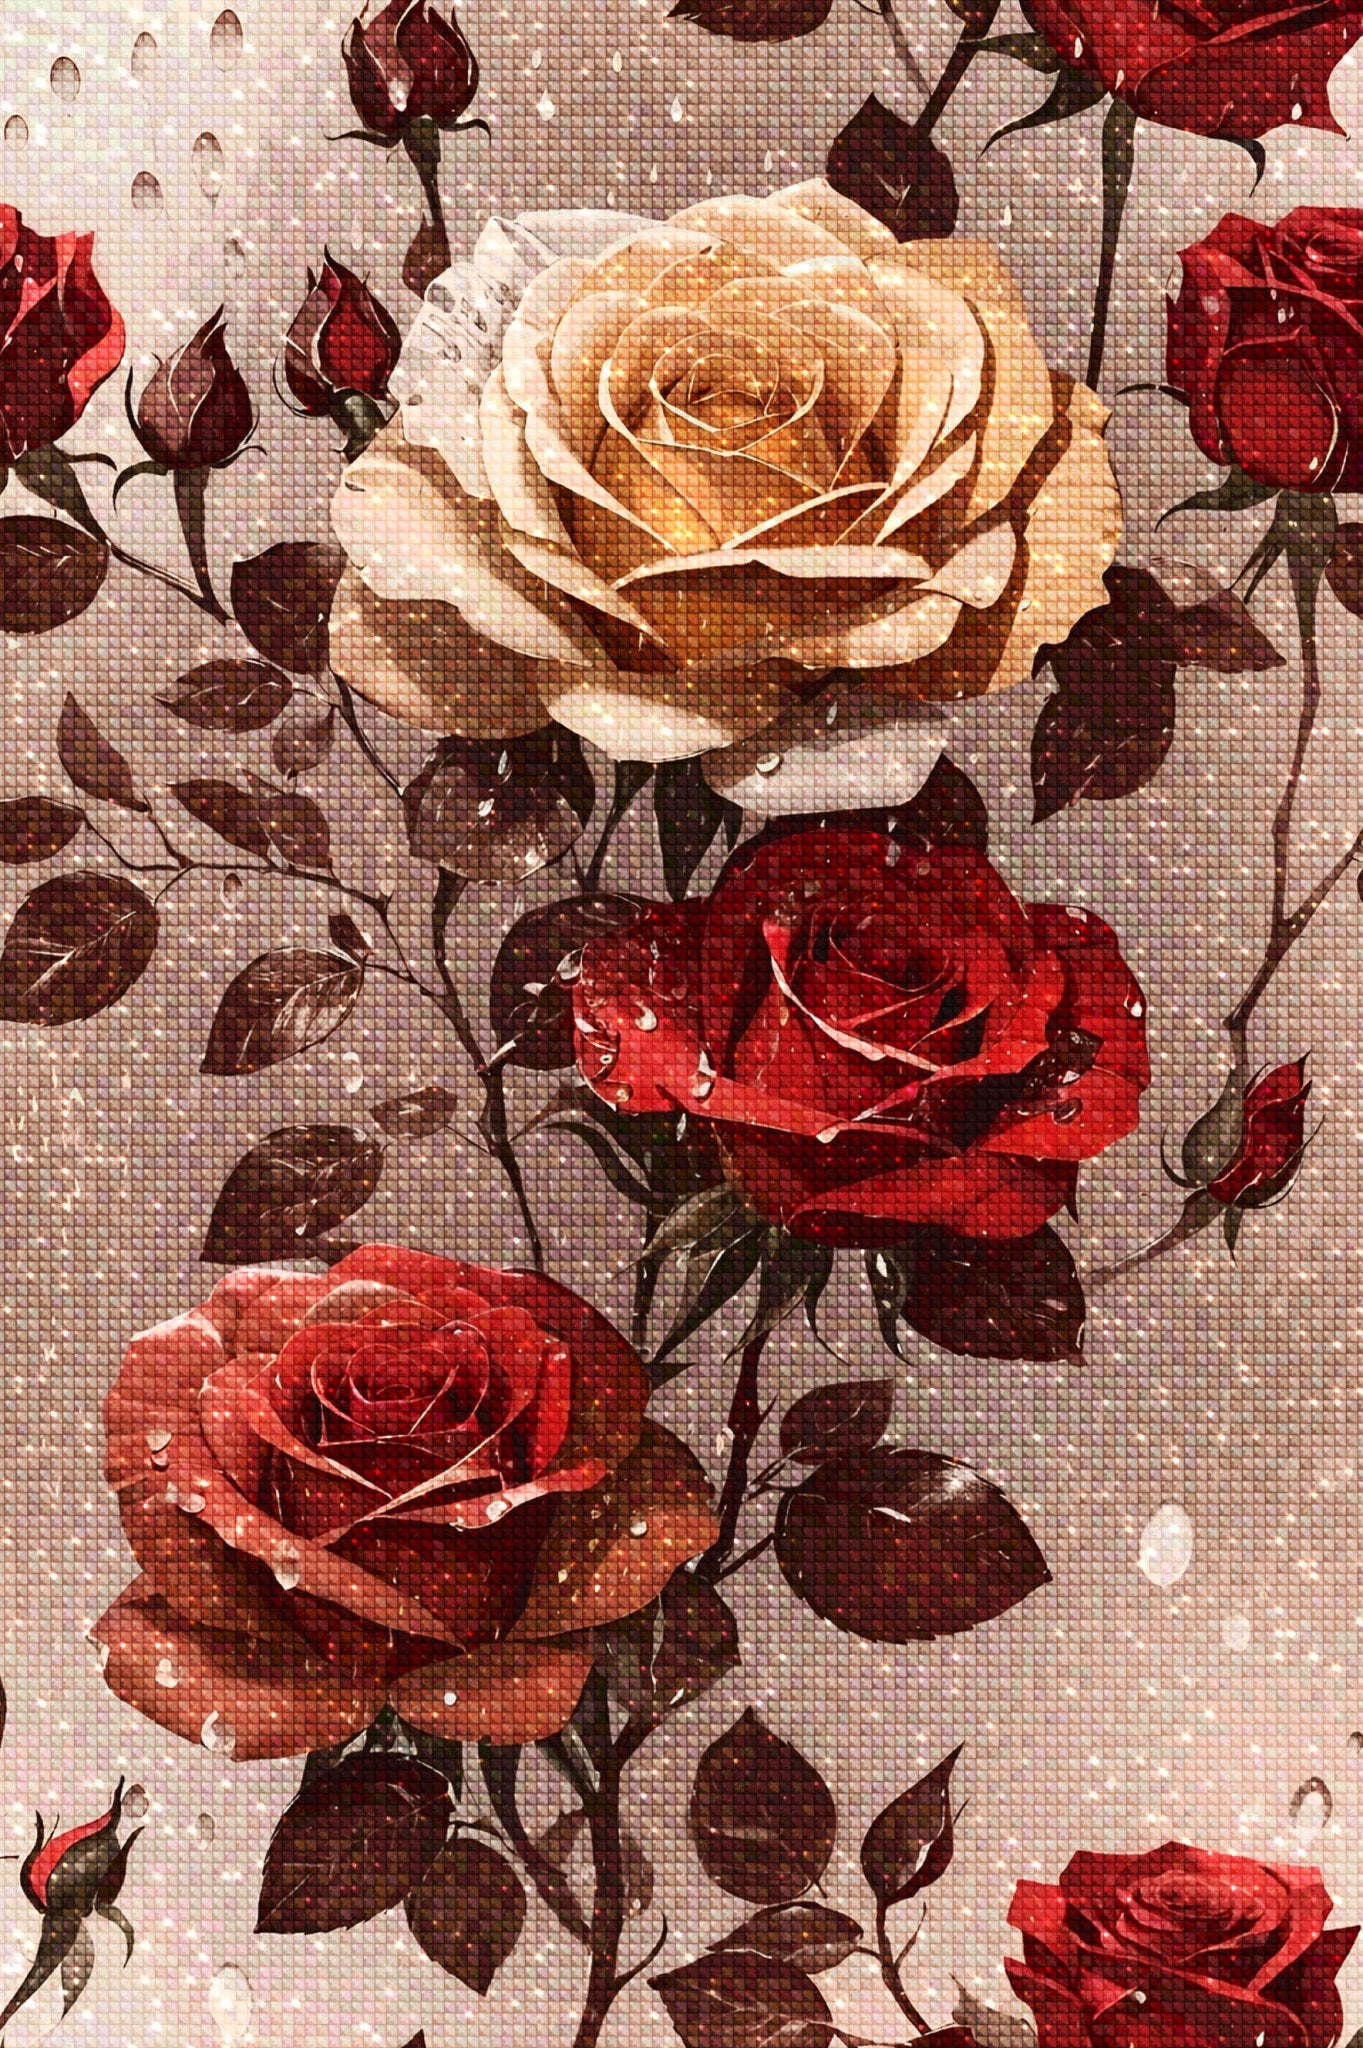 Rain-Kissed Rose - Diamond Painting Kit - Artslo.com